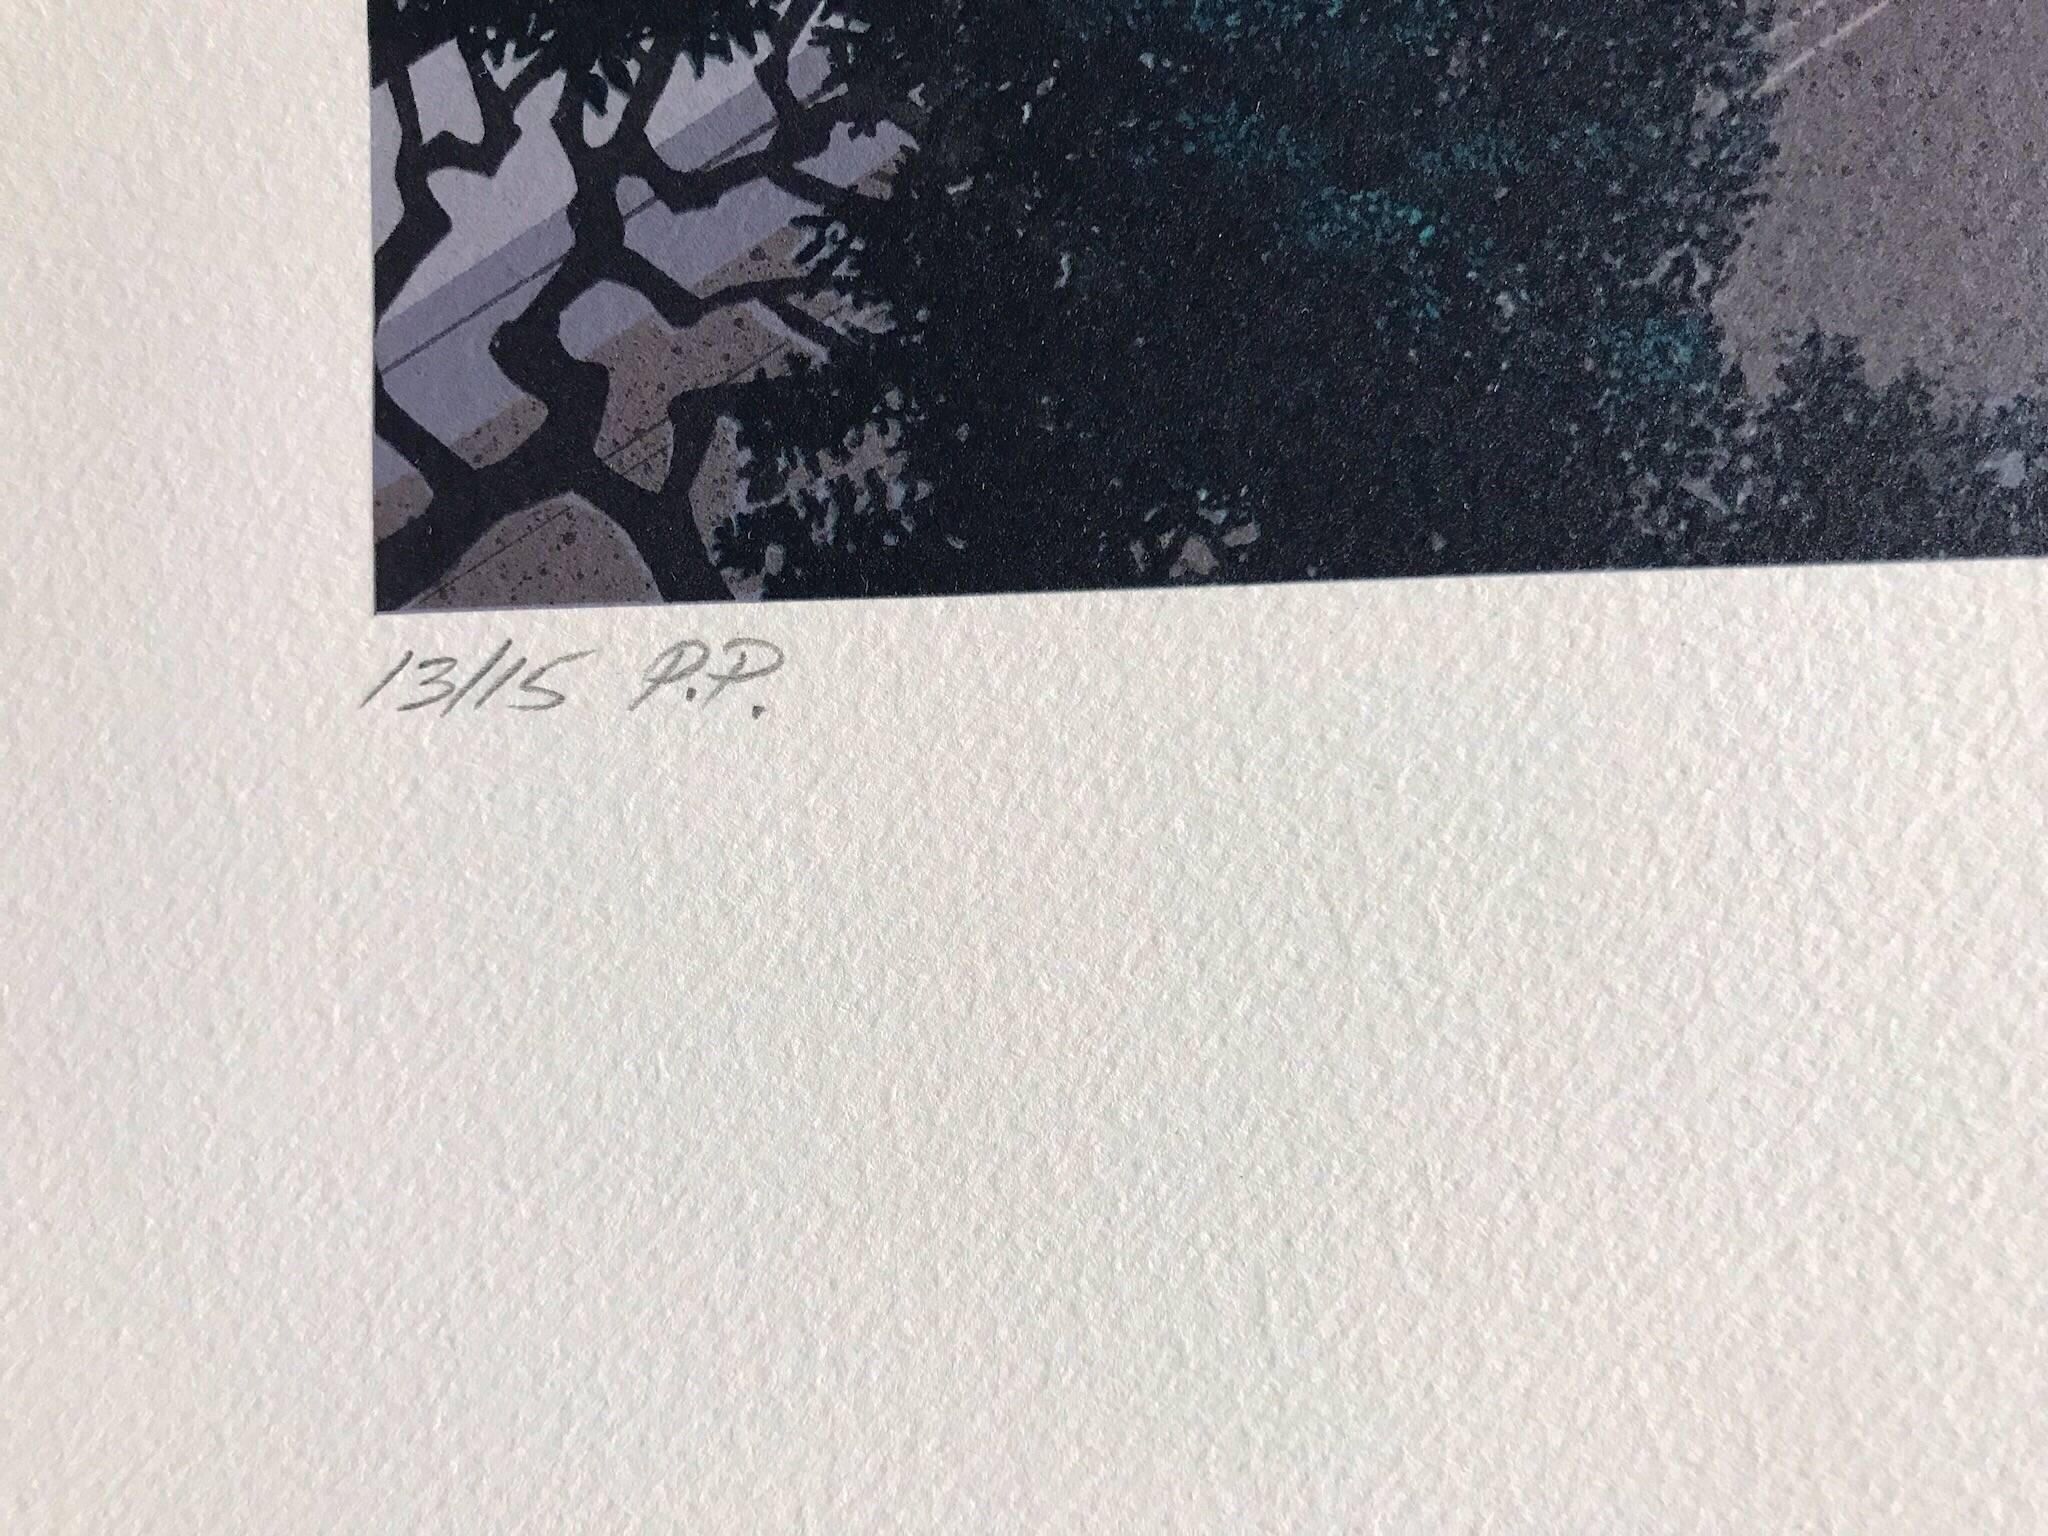 GIARDINO SEGRETTO Signed Lithograph Lakeside Villa Mediterranean Landscape, Moon - Gray Landscape Print by Jim Buckels